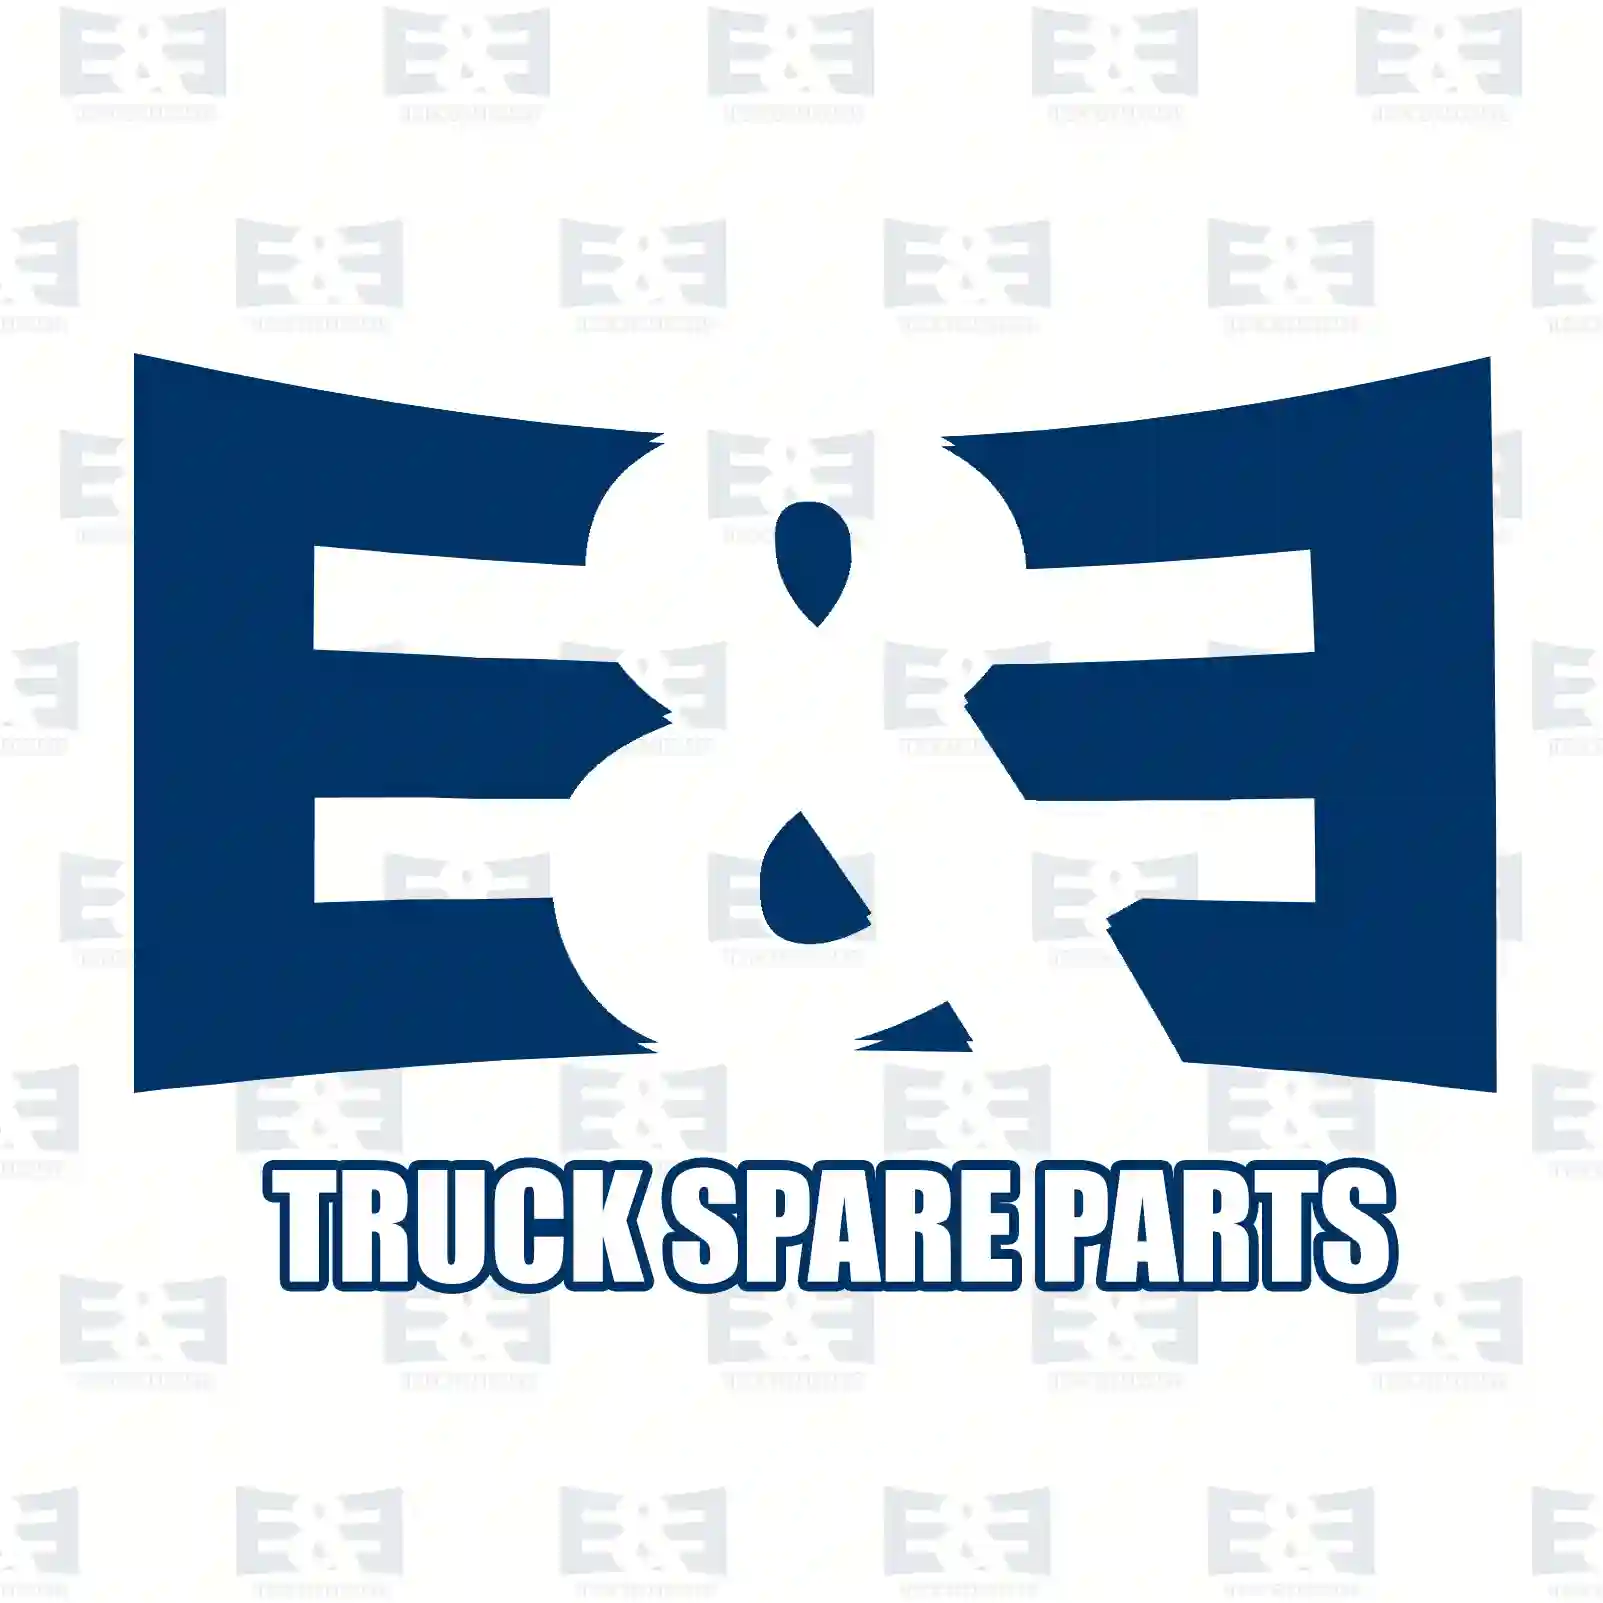 Thermostat, 2E2202286, 0003887780, 0021264668, 0021412642, 0021412647, 7420560253, 7421237215, 7421412642, 20397956, 20441483, 20560253, 21237215, 21412642, 3183581 ||  2E2202286 E&E Truck Spare Parts | Truck Spare Parts, Auotomotive Spare Parts Thermostat, 2E2202286, 0003887780, 0021264668, 0021412642, 0021412647, 7420560253, 7421237215, 7421412642, 20397956, 20441483, 20560253, 21237215, 21412642, 3183581 ||  2E2202286 E&E Truck Spare Parts | Truck Spare Parts, Auotomotive Spare Parts